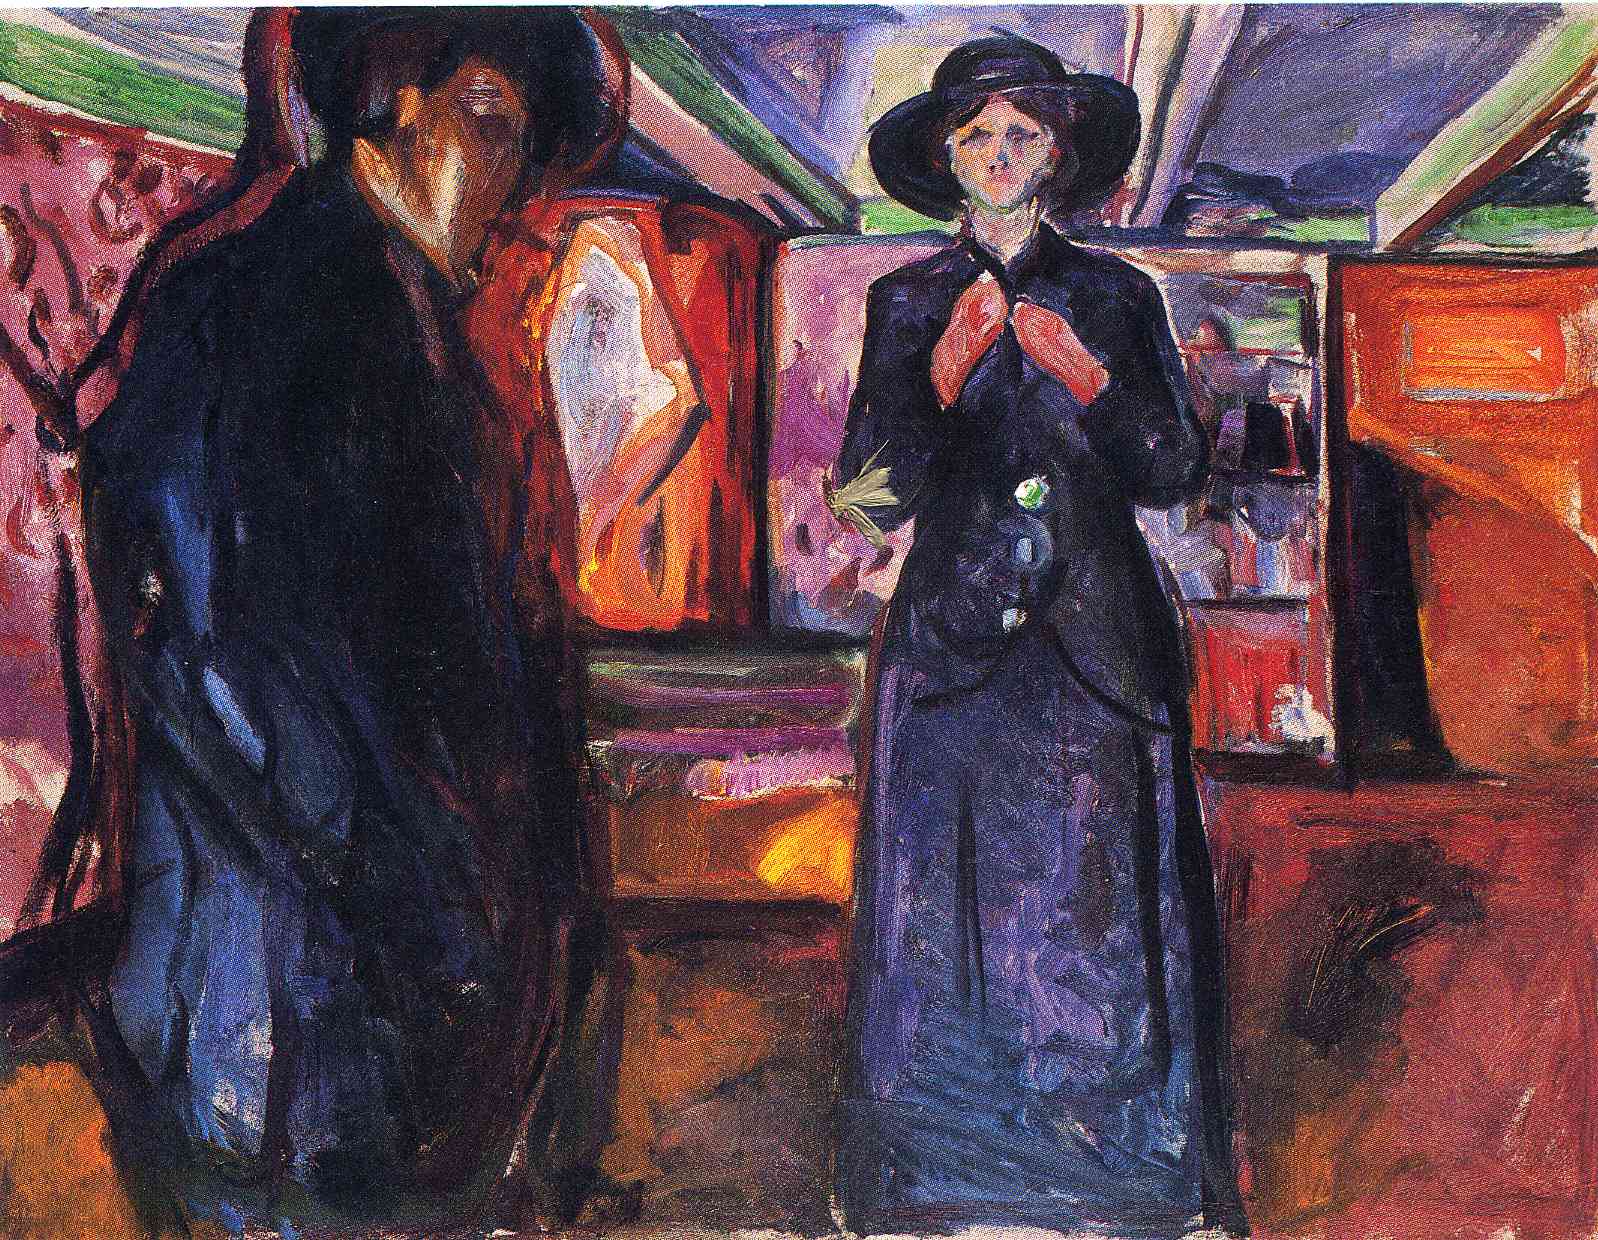 Эдвард Мунк. "Мужчина и женщина II". 1915. Музей Мунка, Осло.